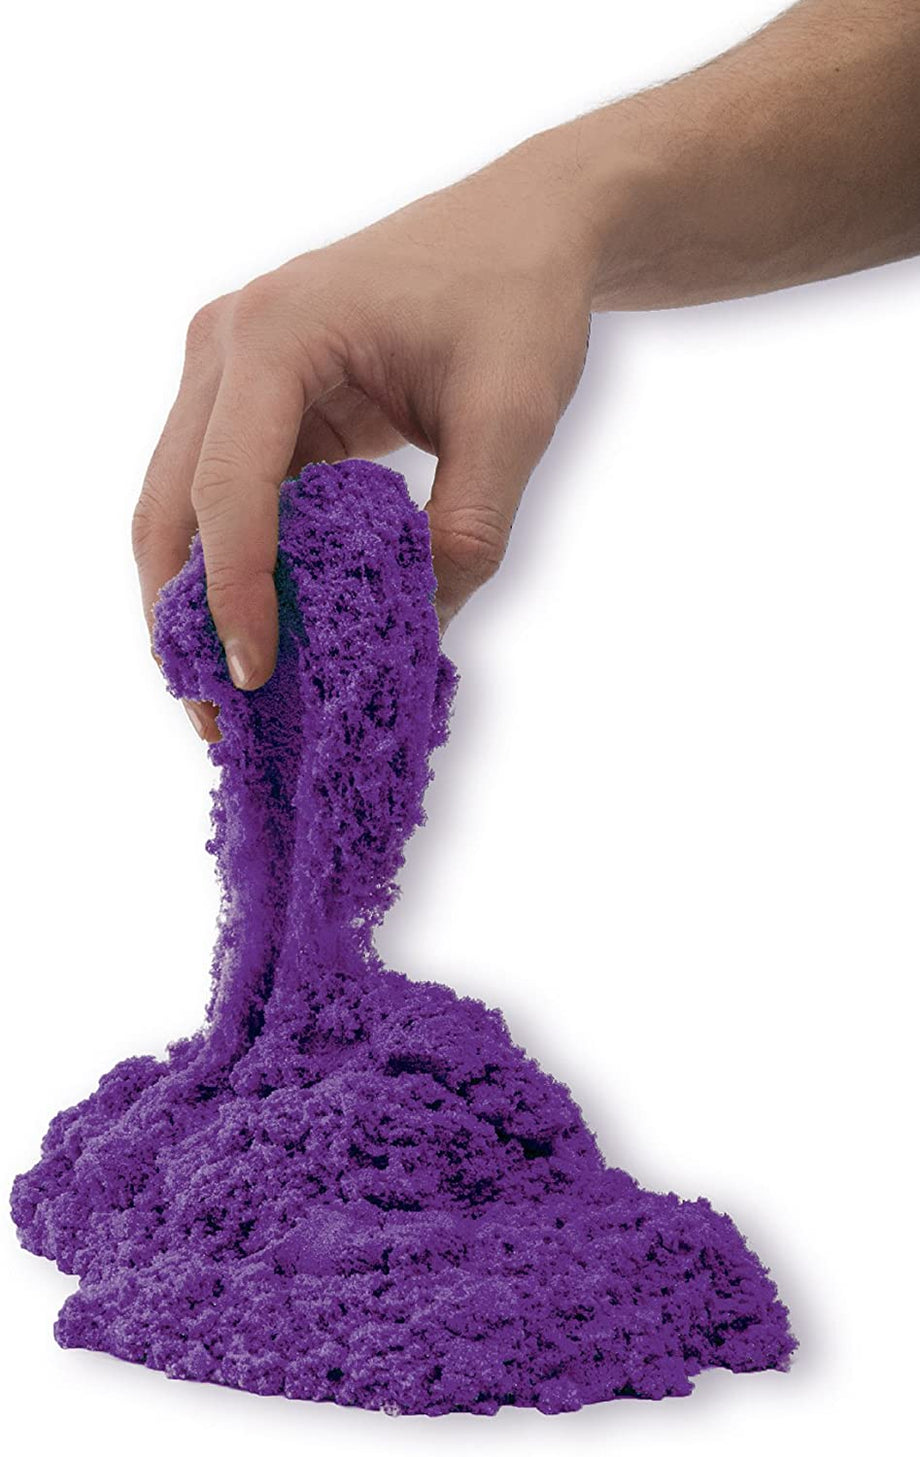 Kinetic Sand purple Sandbox Set